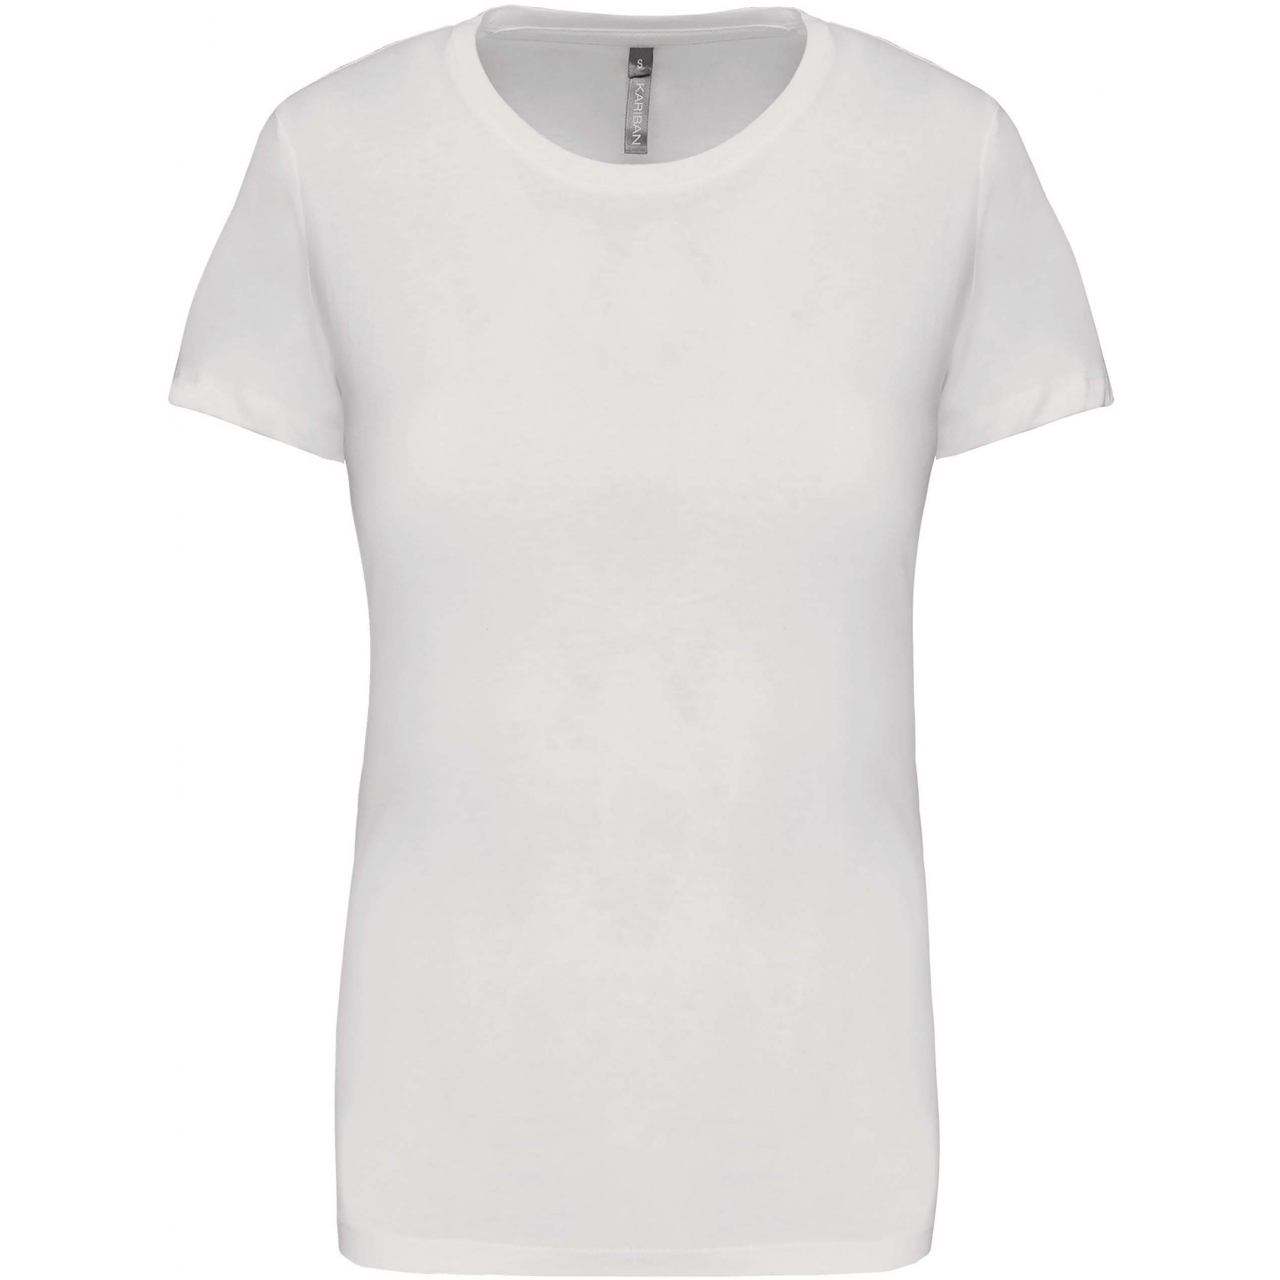 Dámské tričko Kariban s krátkým rukávem - bílé, M